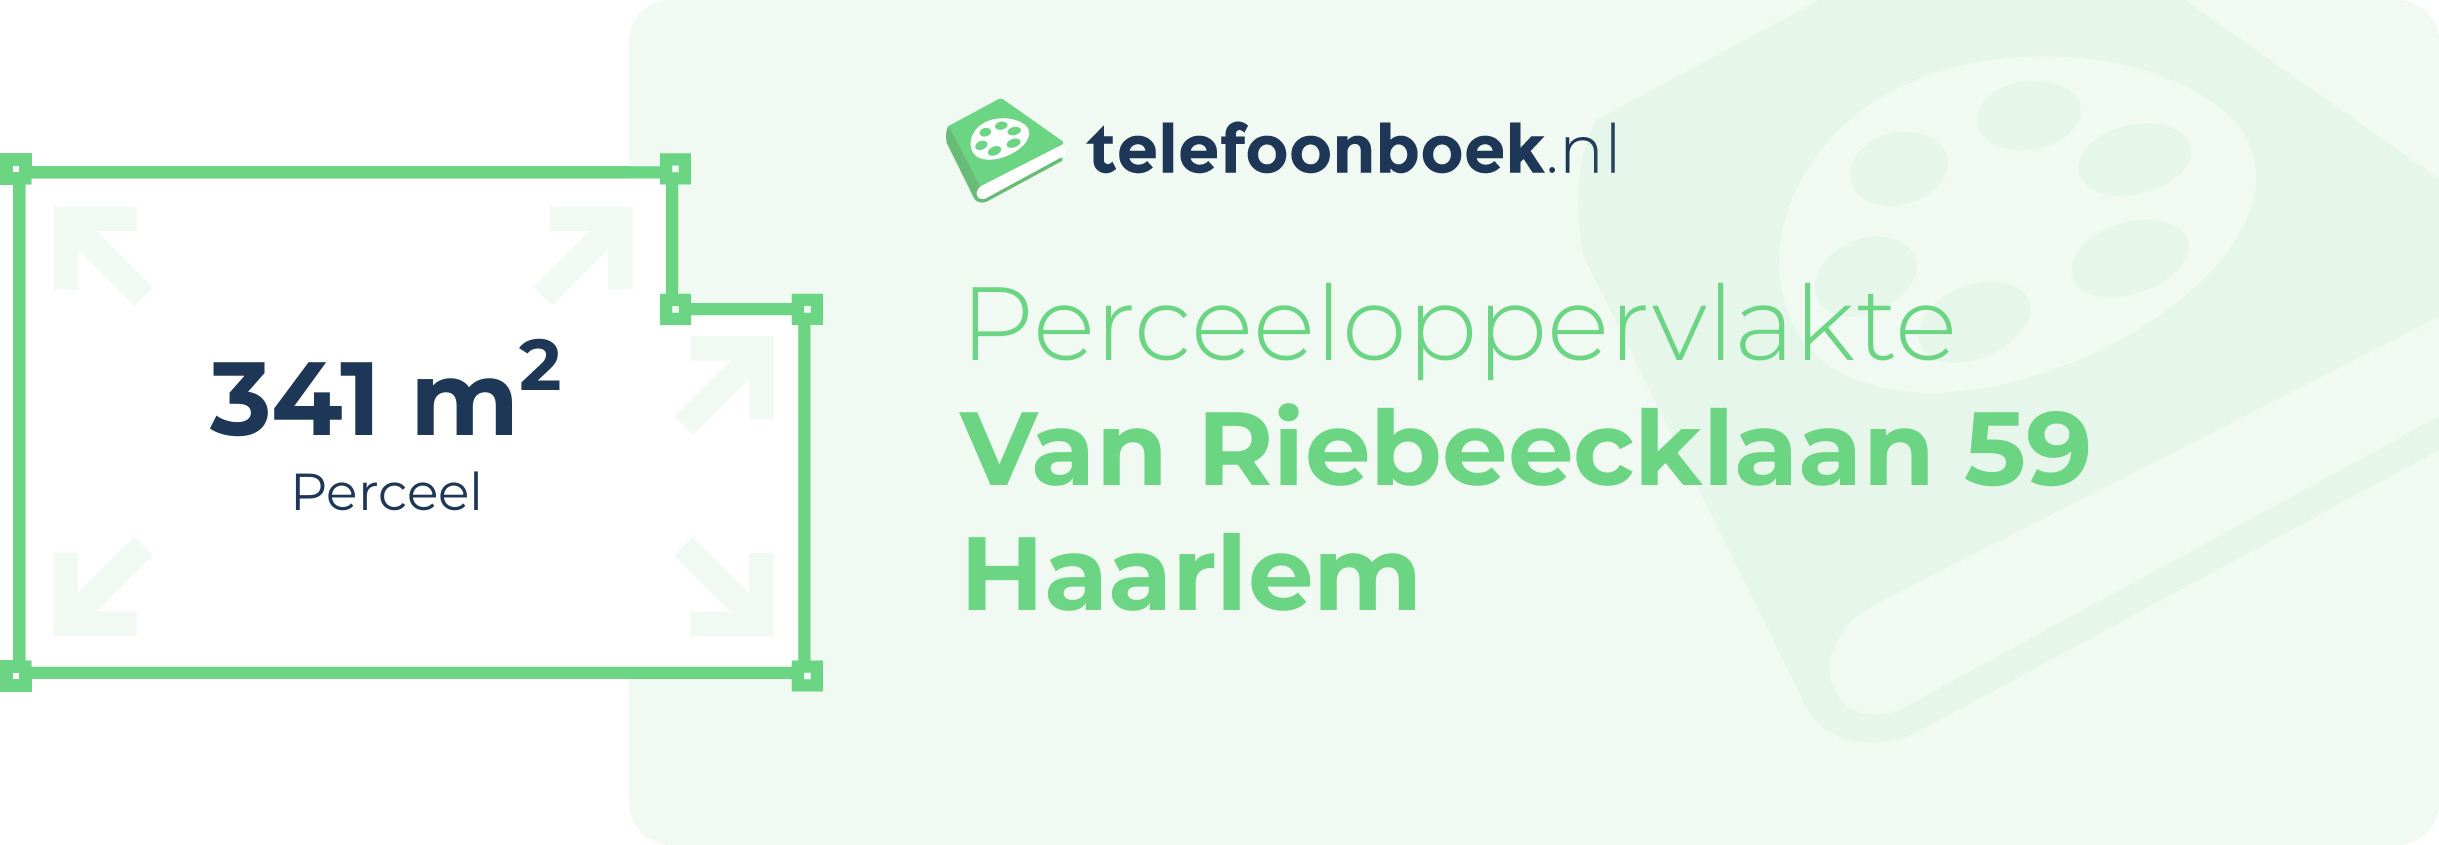 Perceeloppervlakte Van Riebeecklaan 59 Haarlem